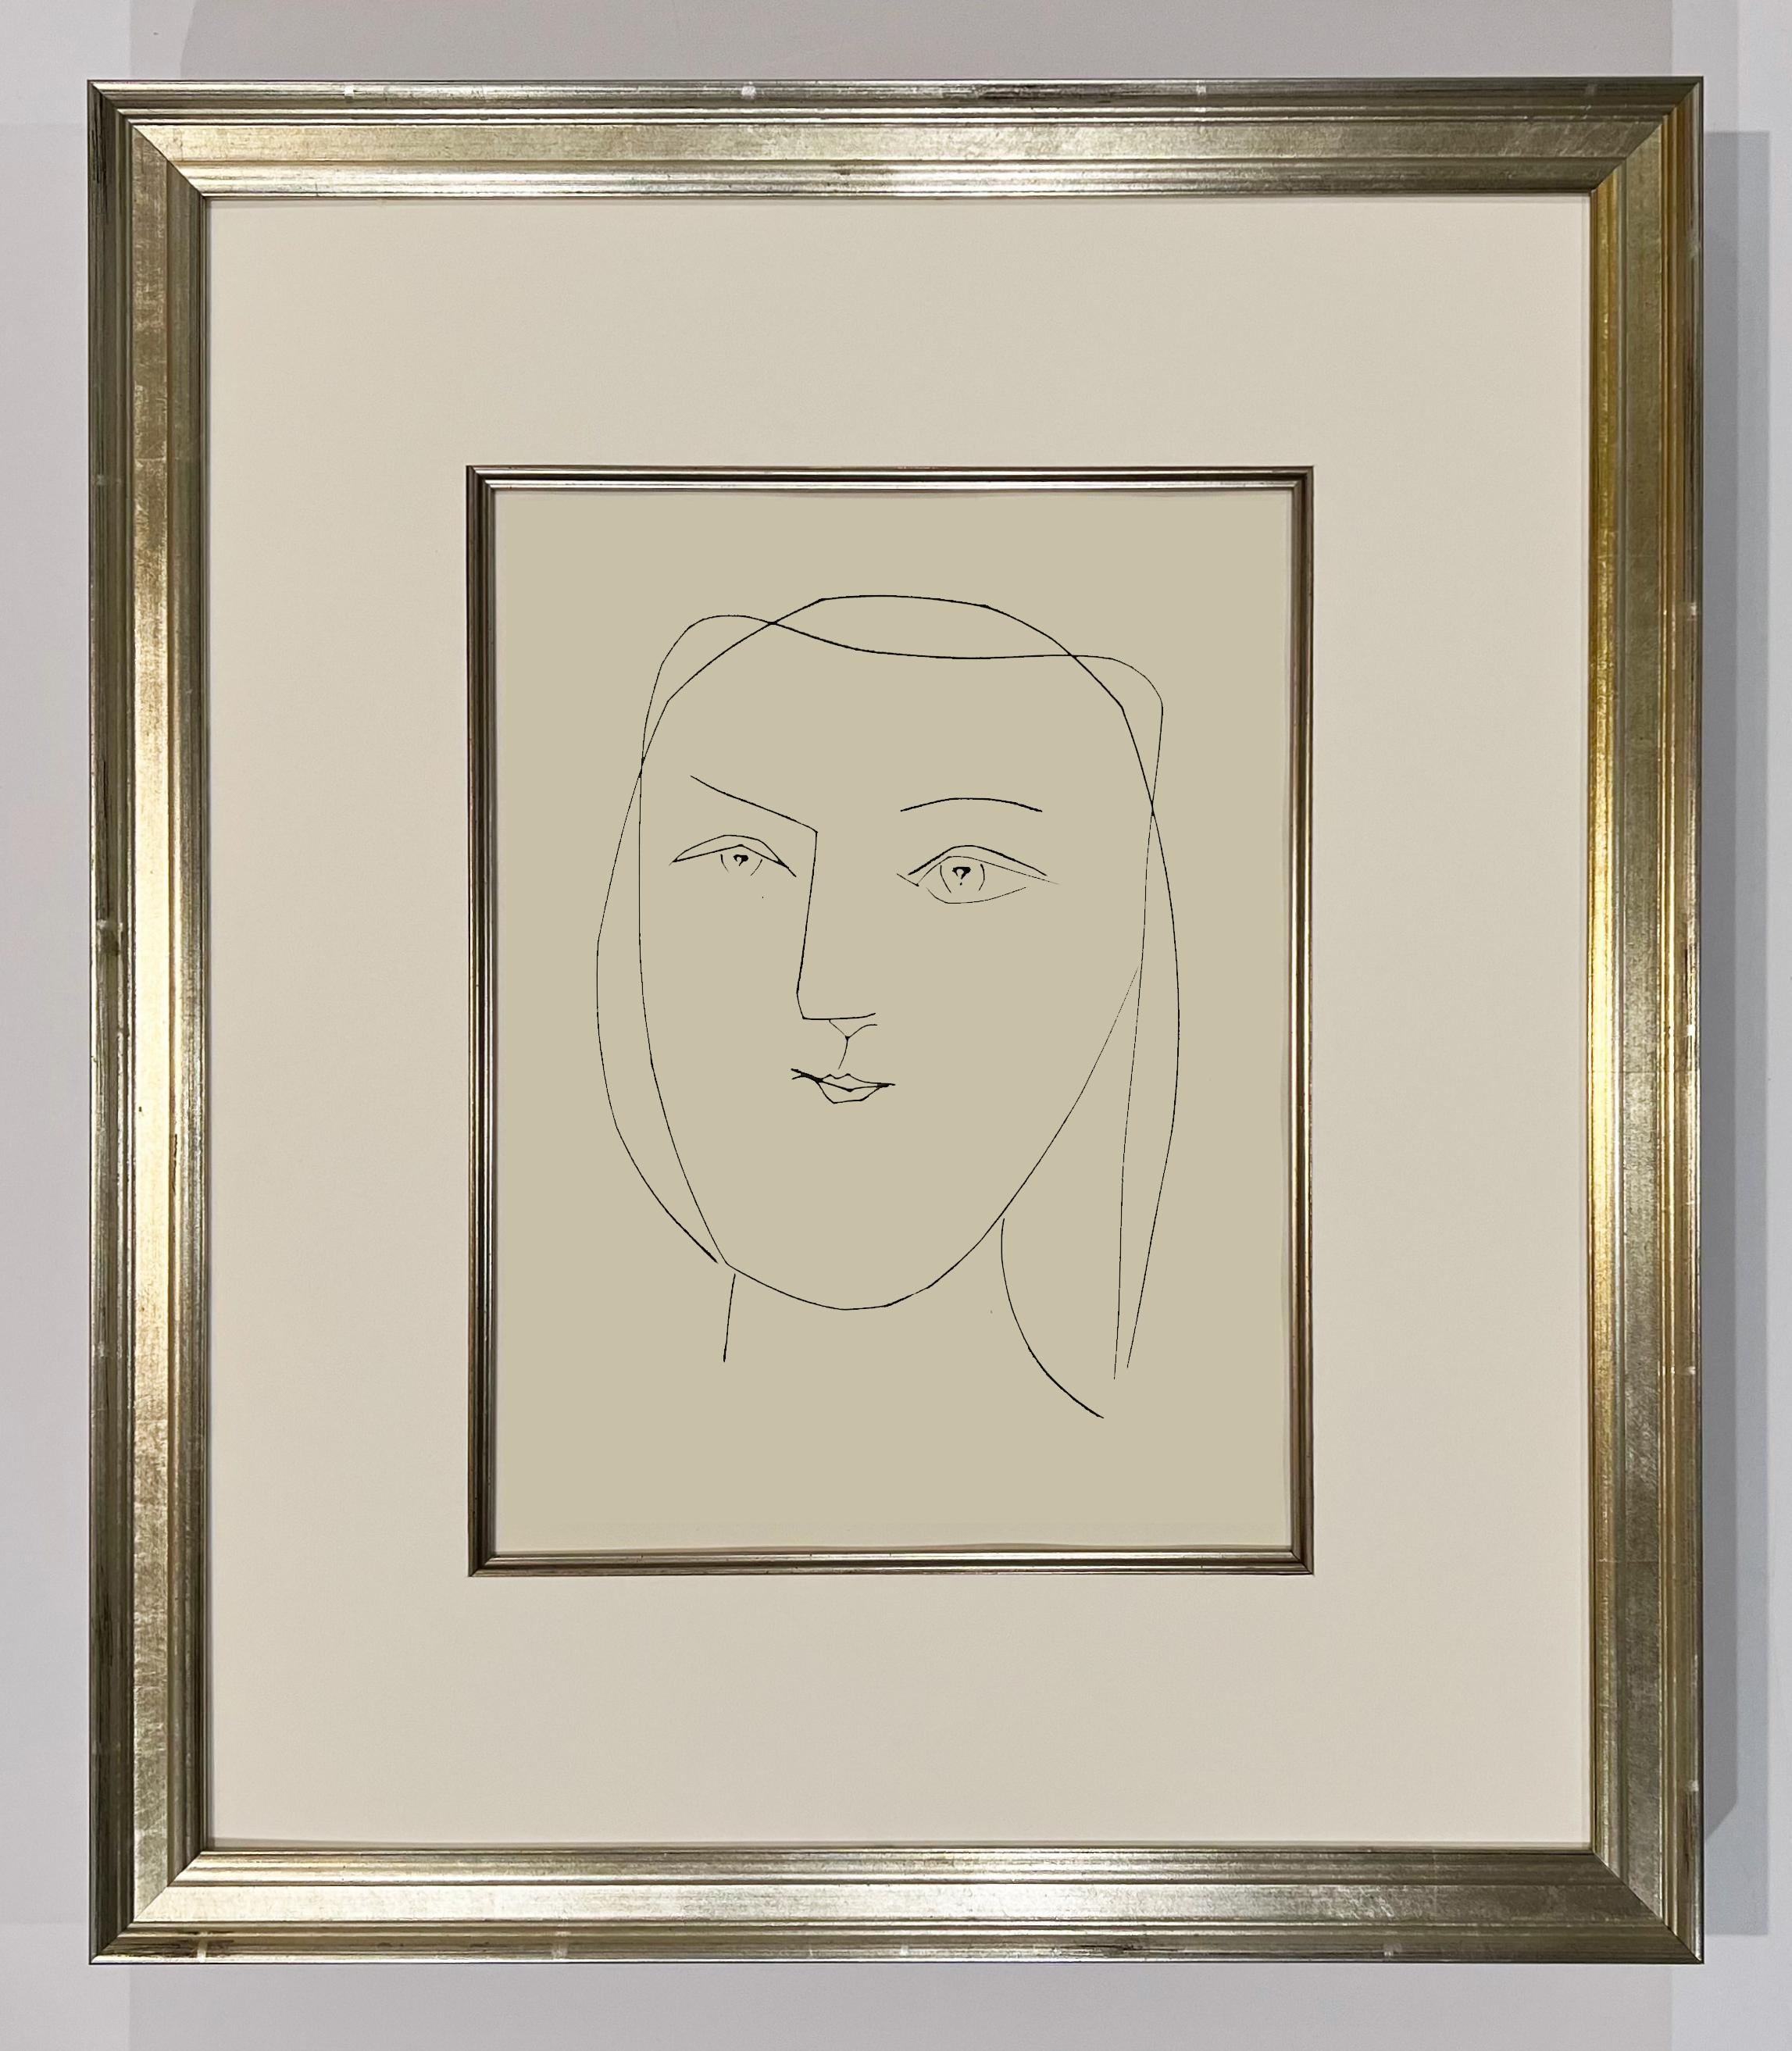 Tête ovale d'une femme aux yeux percés (planche XXI), de Carmen - Print de Pablo Picasso